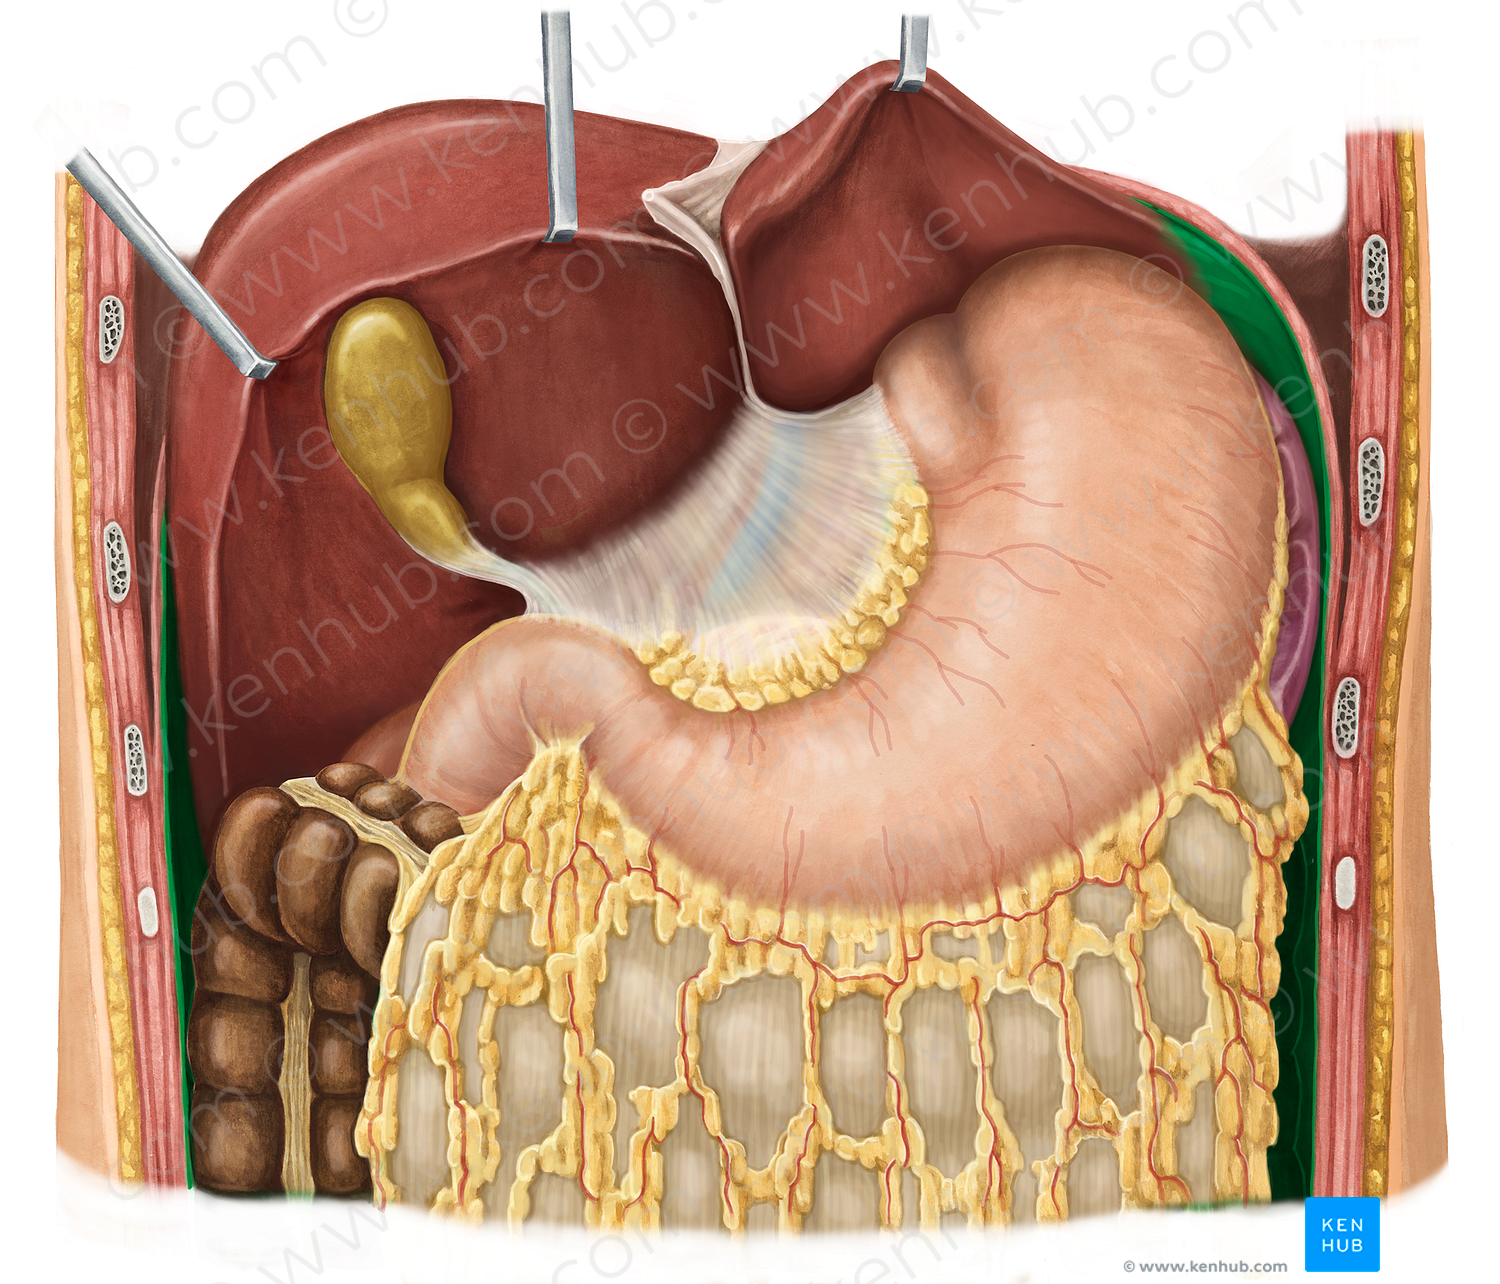 Parietal peritoneum (#7874)